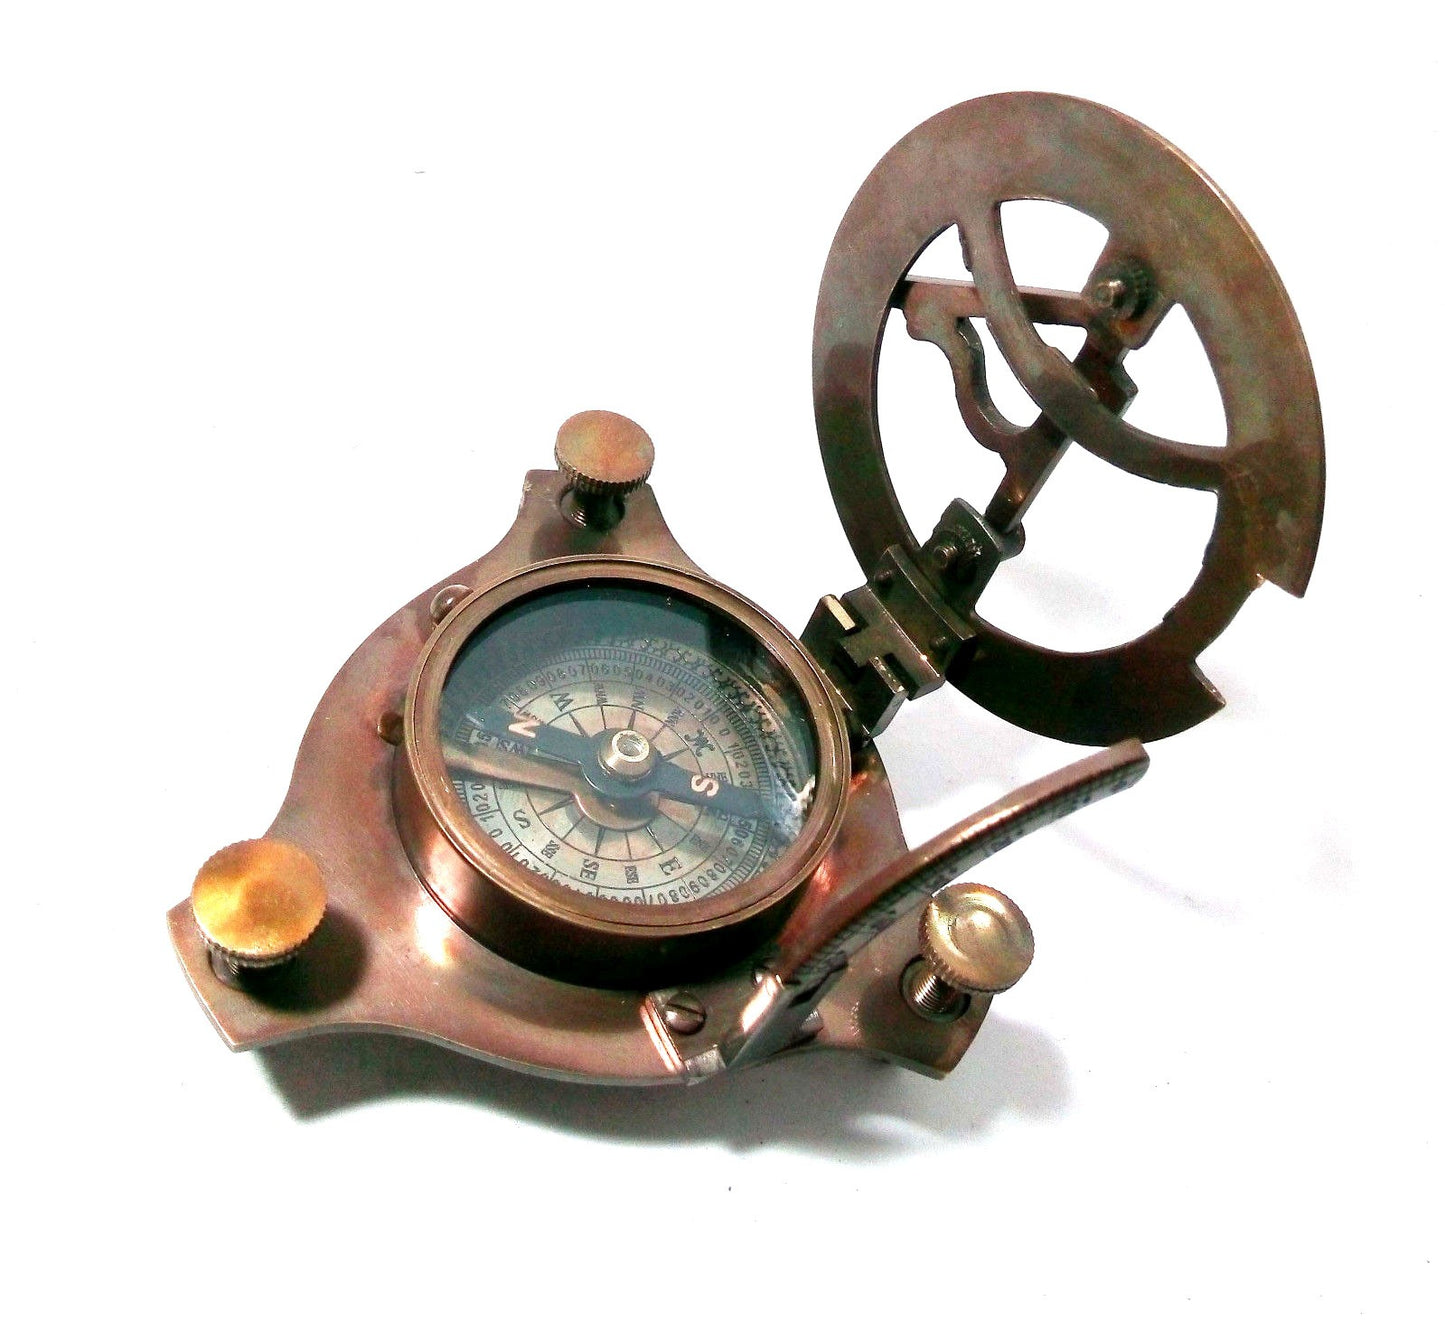 Antique Brass Sundial Compass 3" West London Wholesale Lot